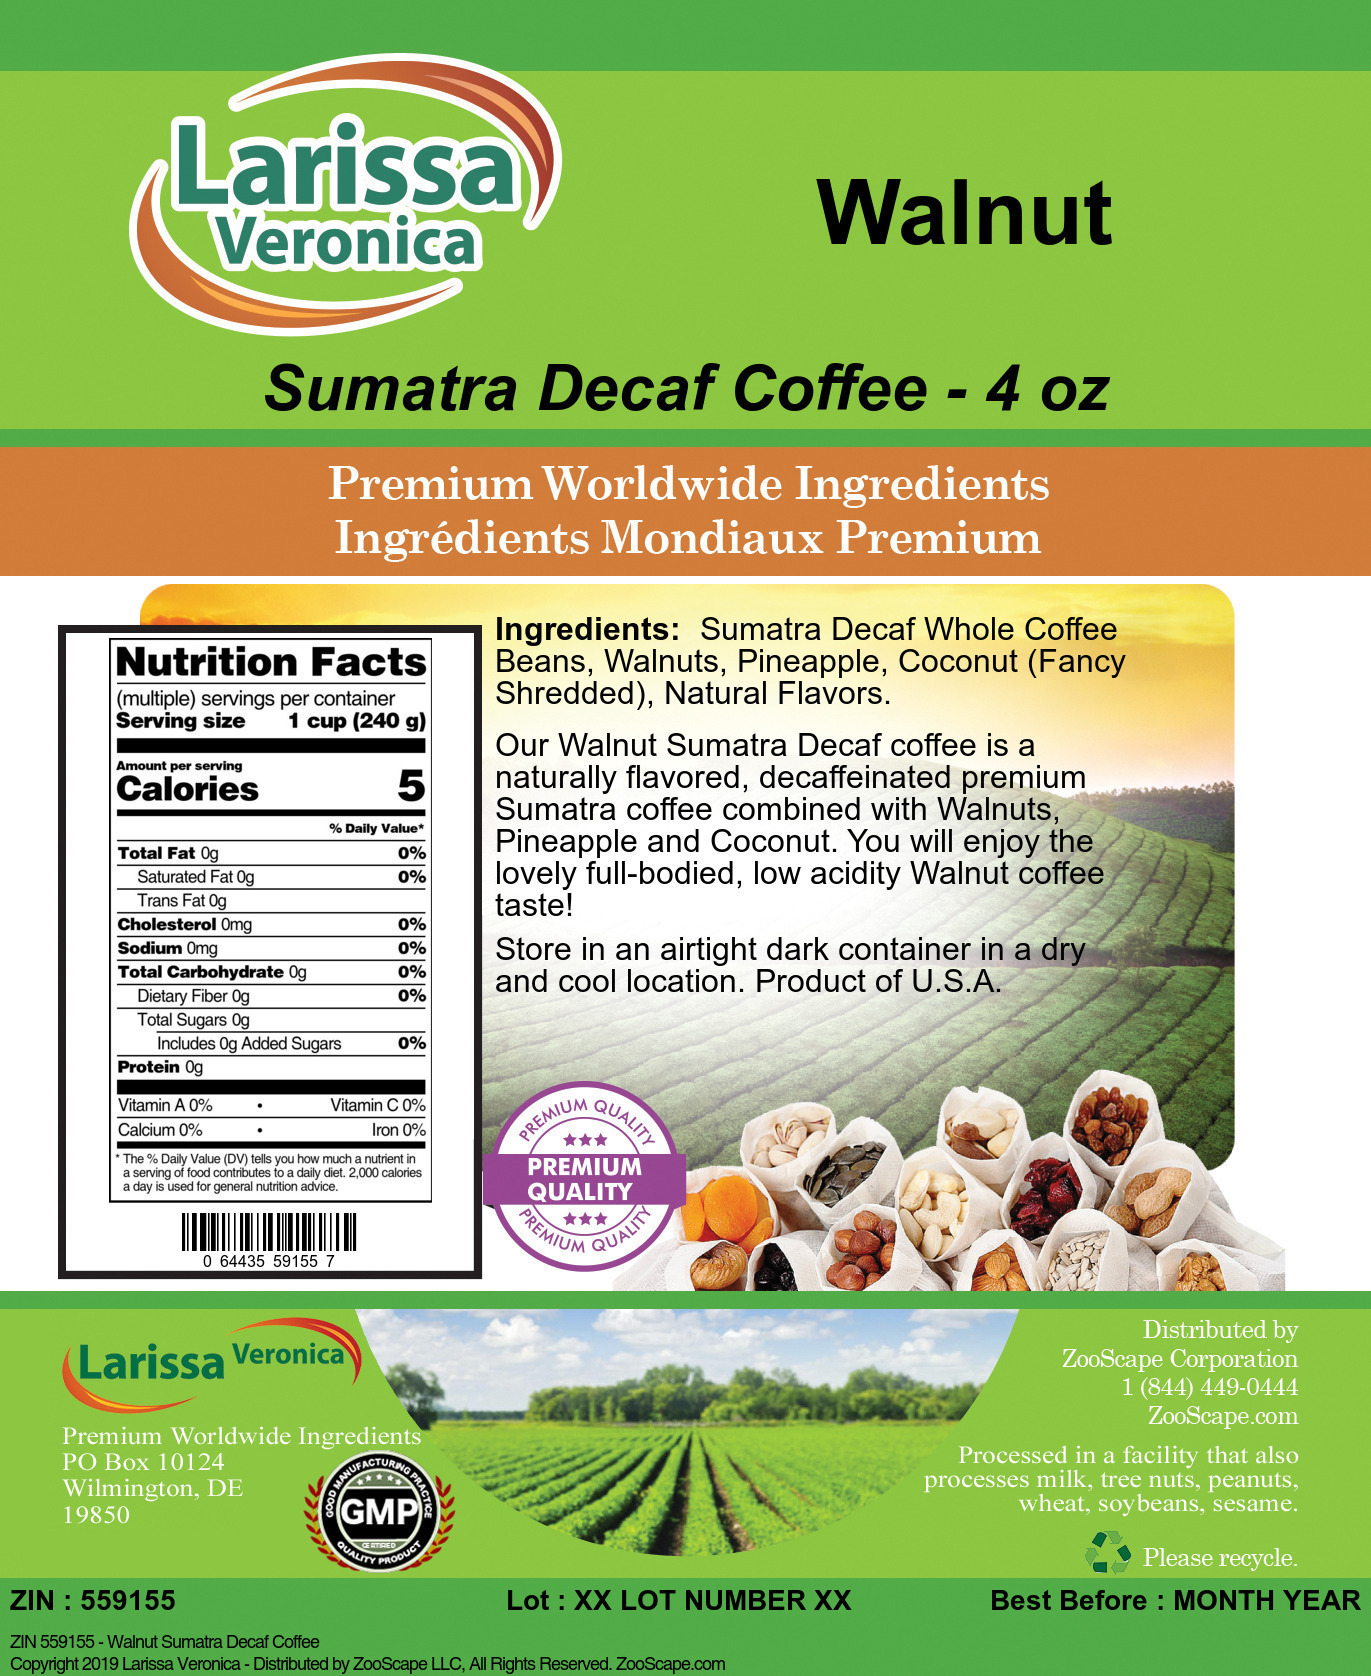 Walnut Sumatra Decaf Coffee - Label